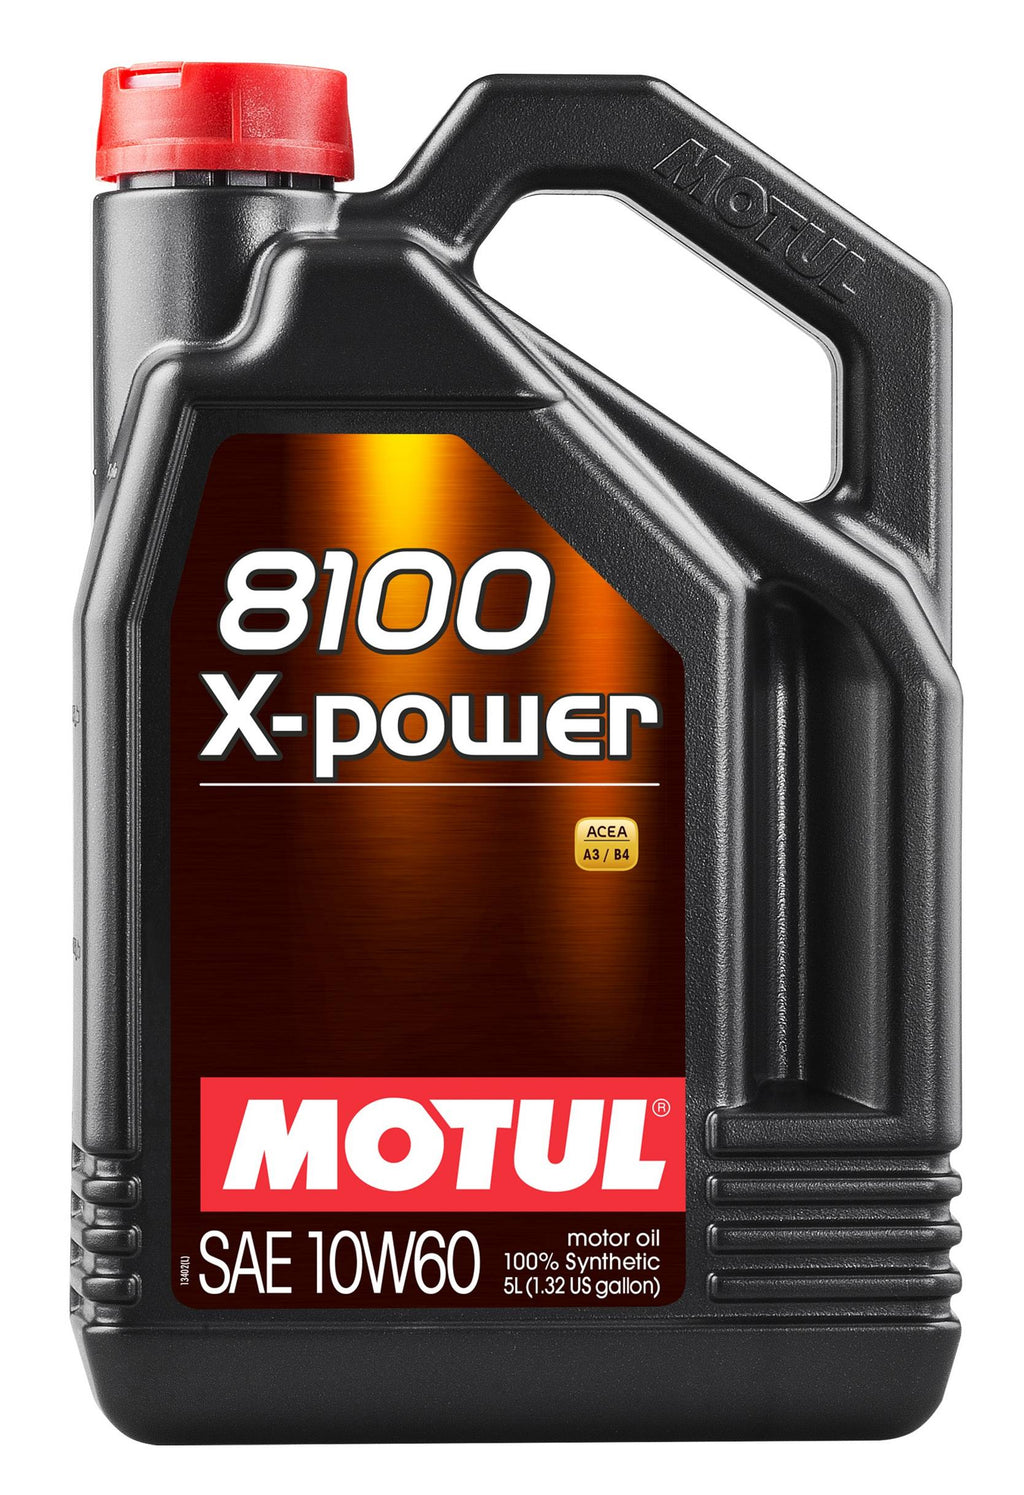 Motul - 8100 X-POWER Synthetic Motor Oil - 10W60